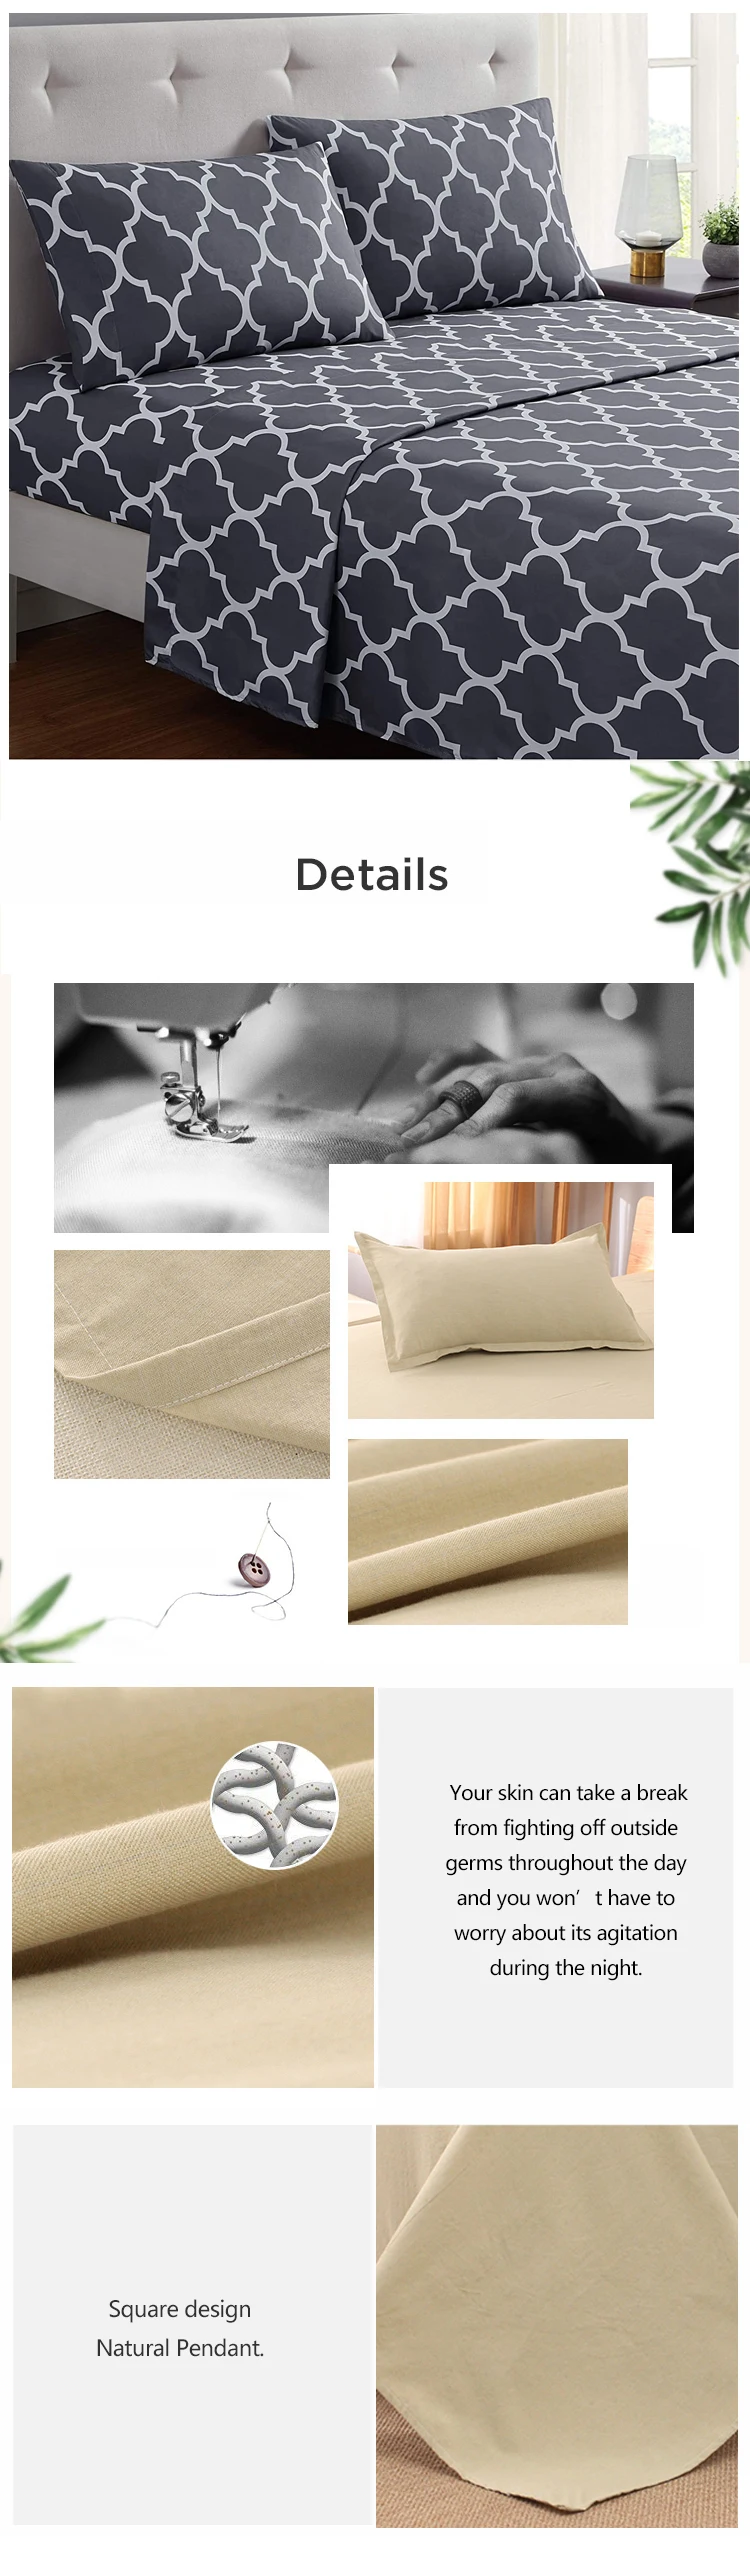 Enerup Biodegradable 300Tc Cotton King Size Duvet Cover Bedding Set Protector For Star Hotel Bedroom Manufacturer